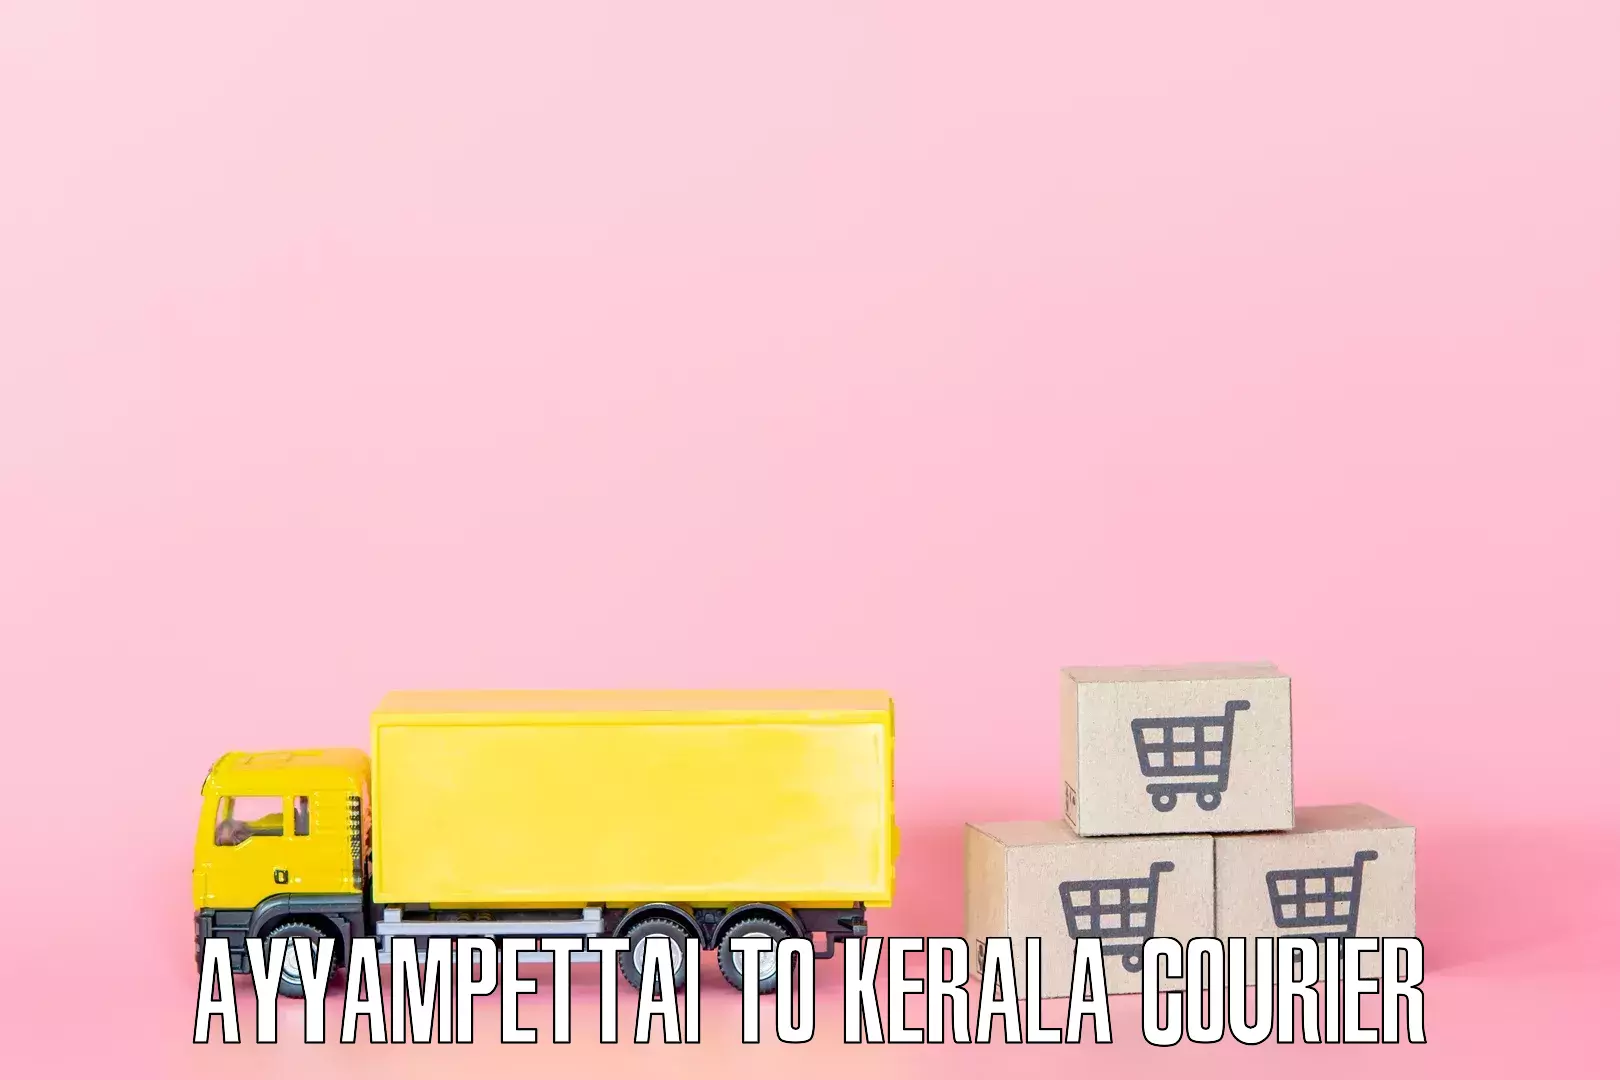 Nationwide household relocation Ayyampettai to Kerala